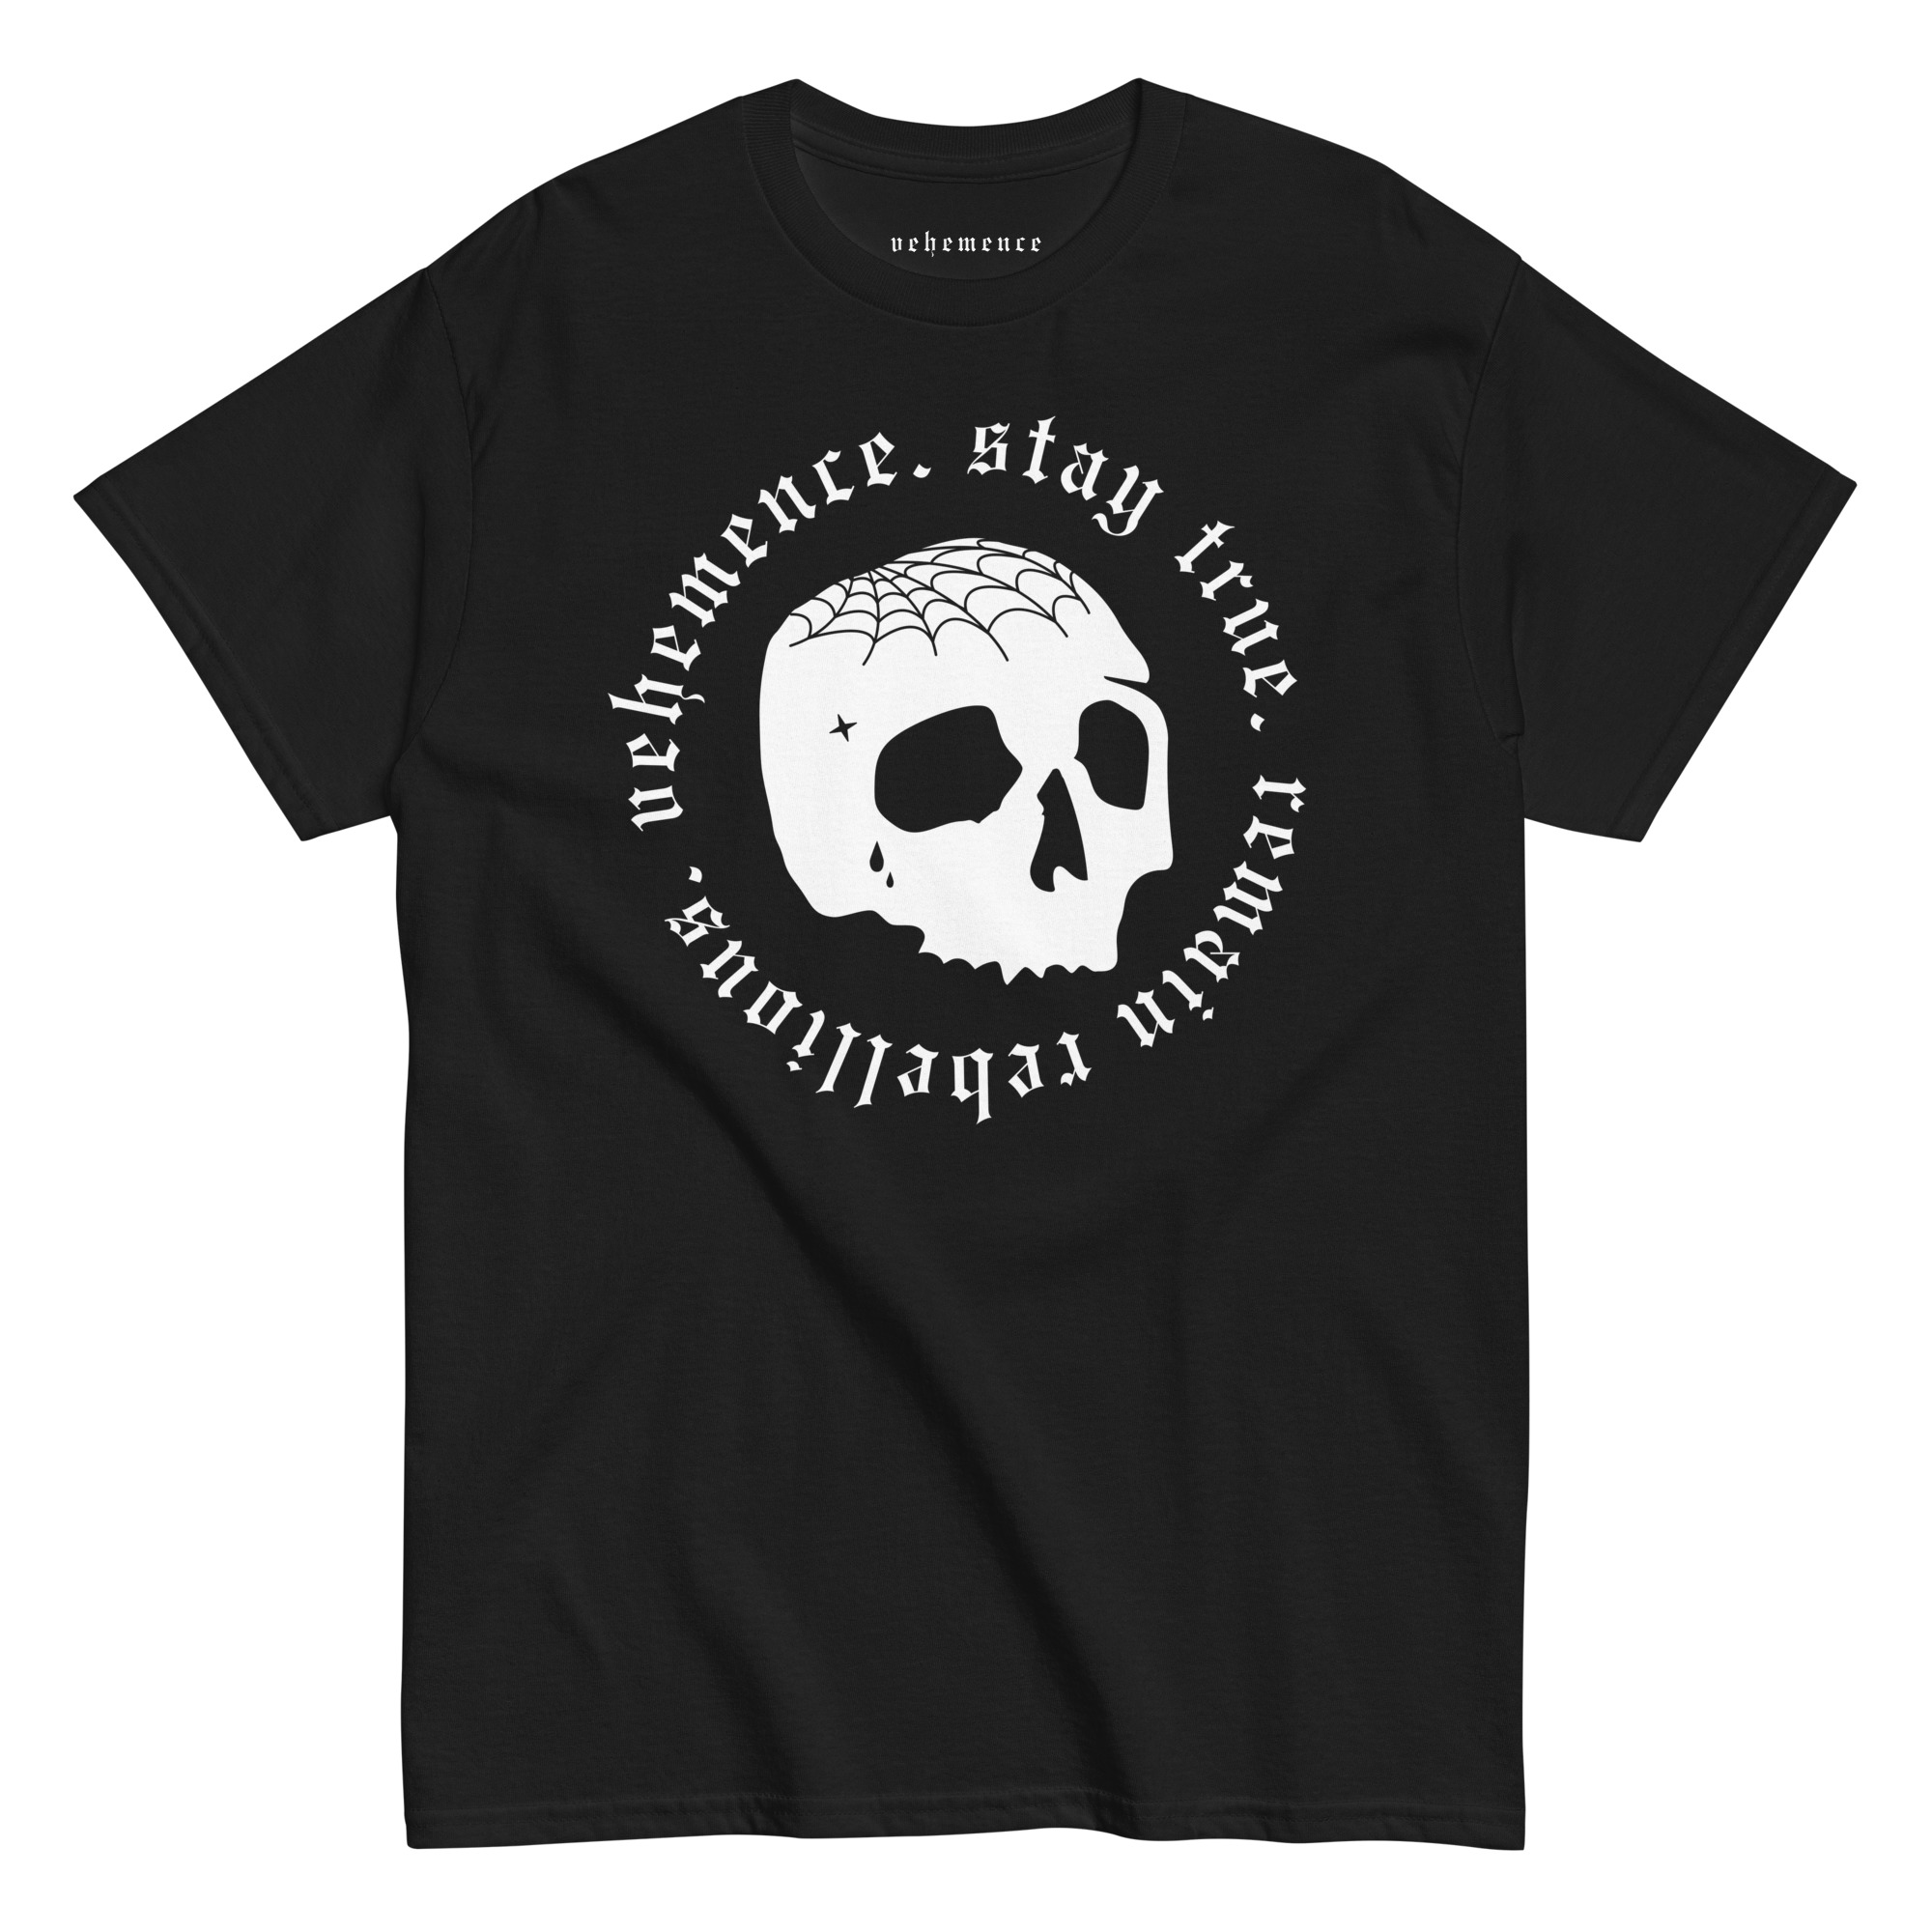 Stay true cranium tattoo t-shirt – black